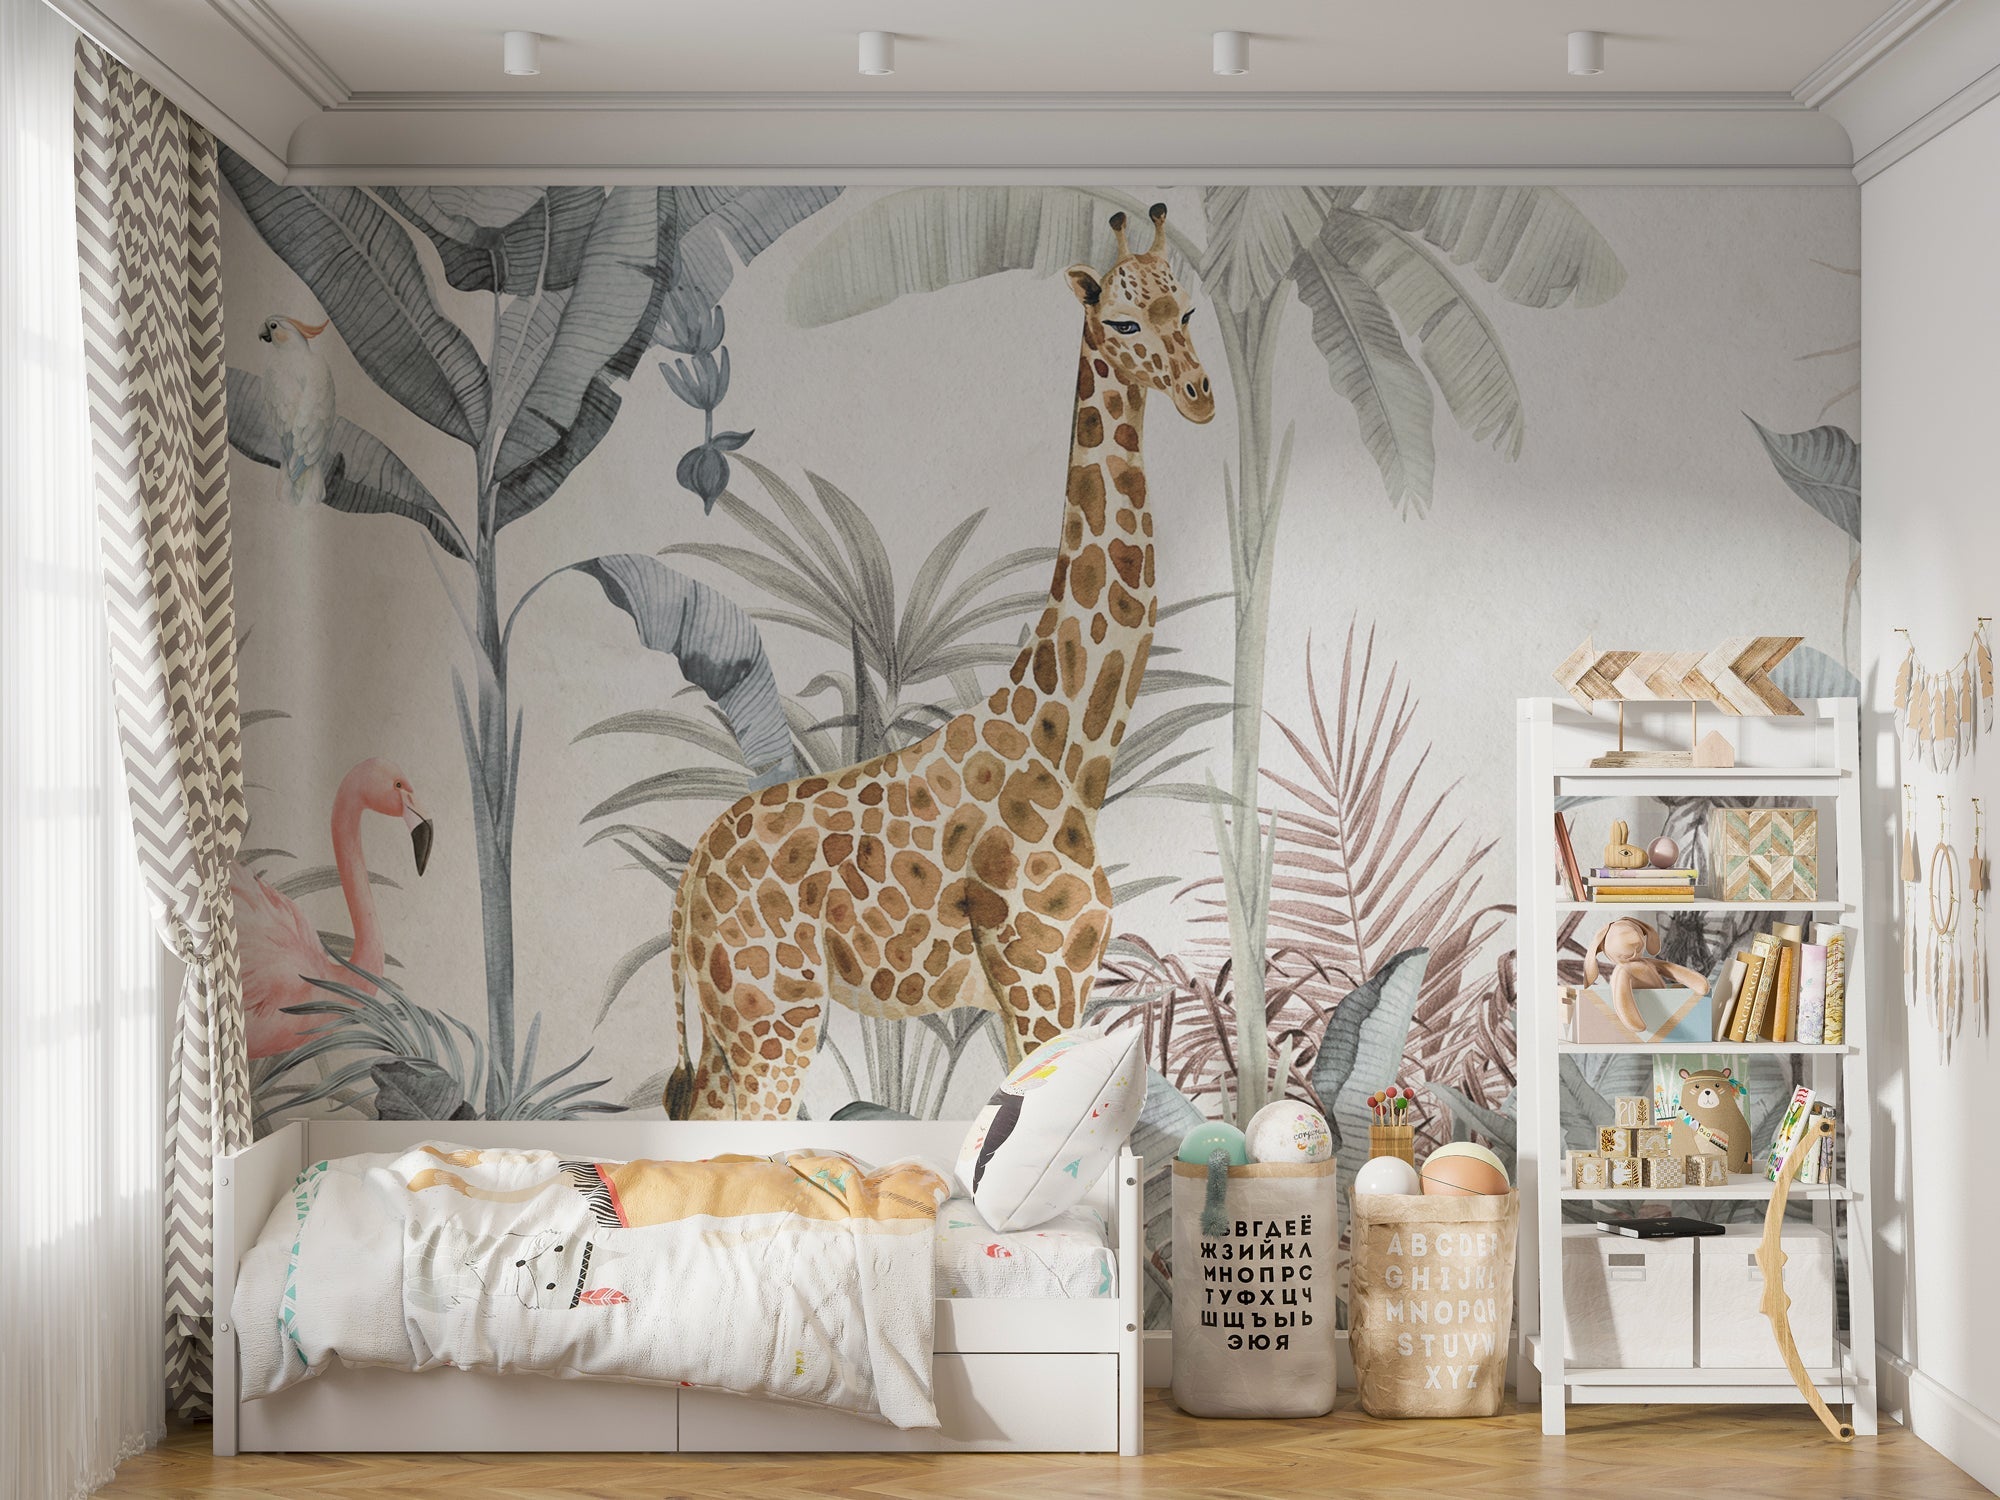 Jungle Safari Animals - Kids Room Wallpaper Mural